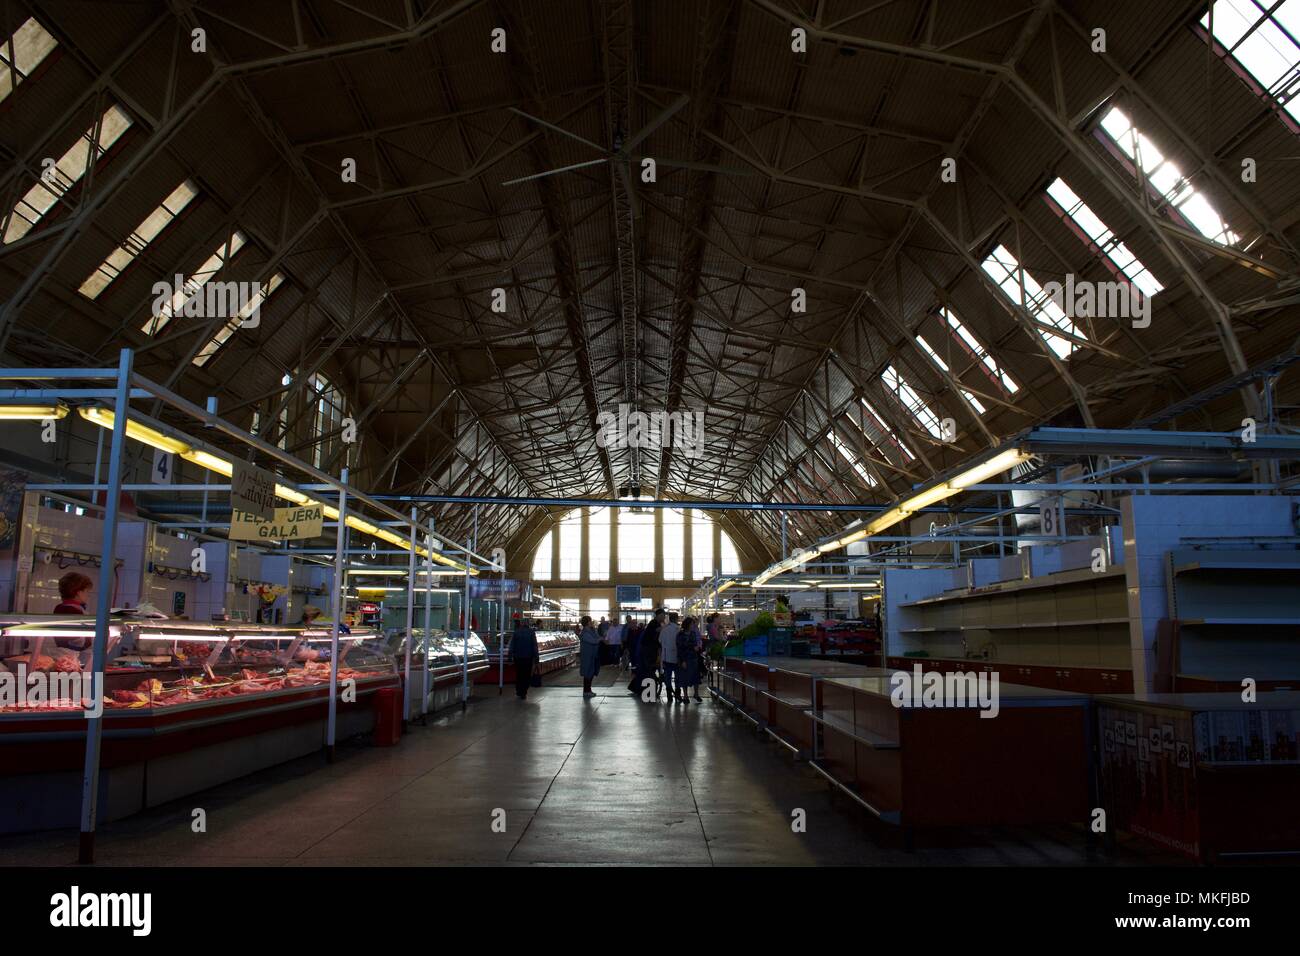 Die Innenseite der alten Zeppelin Hangar, die als ein Markt in Lettland verwendet wird. Stockfoto